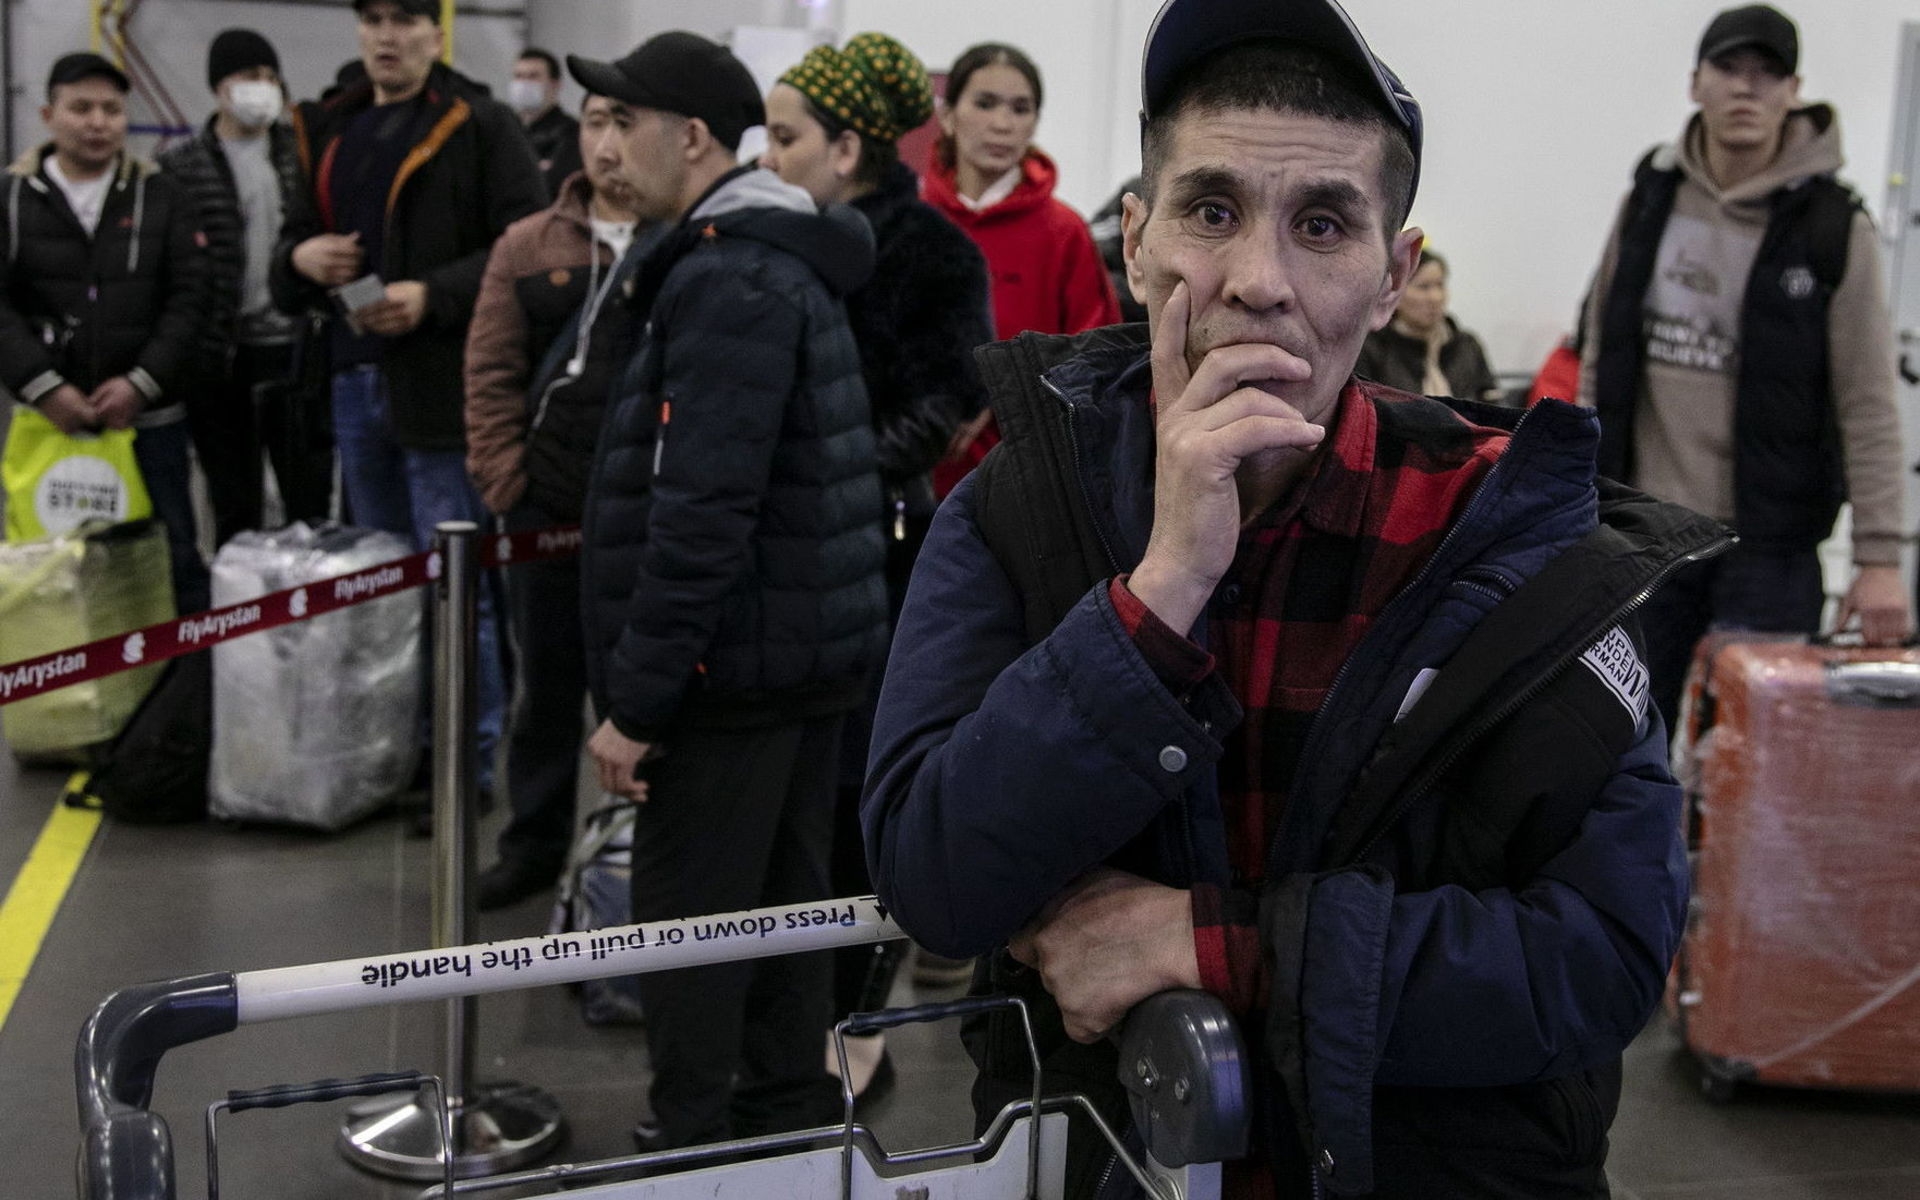 Таджики уезжают из москвы после теракта. Мигранты в аэропорту. Мигранты Таджикистана. Узбеки в аэропорту. Трудовые мигранты.